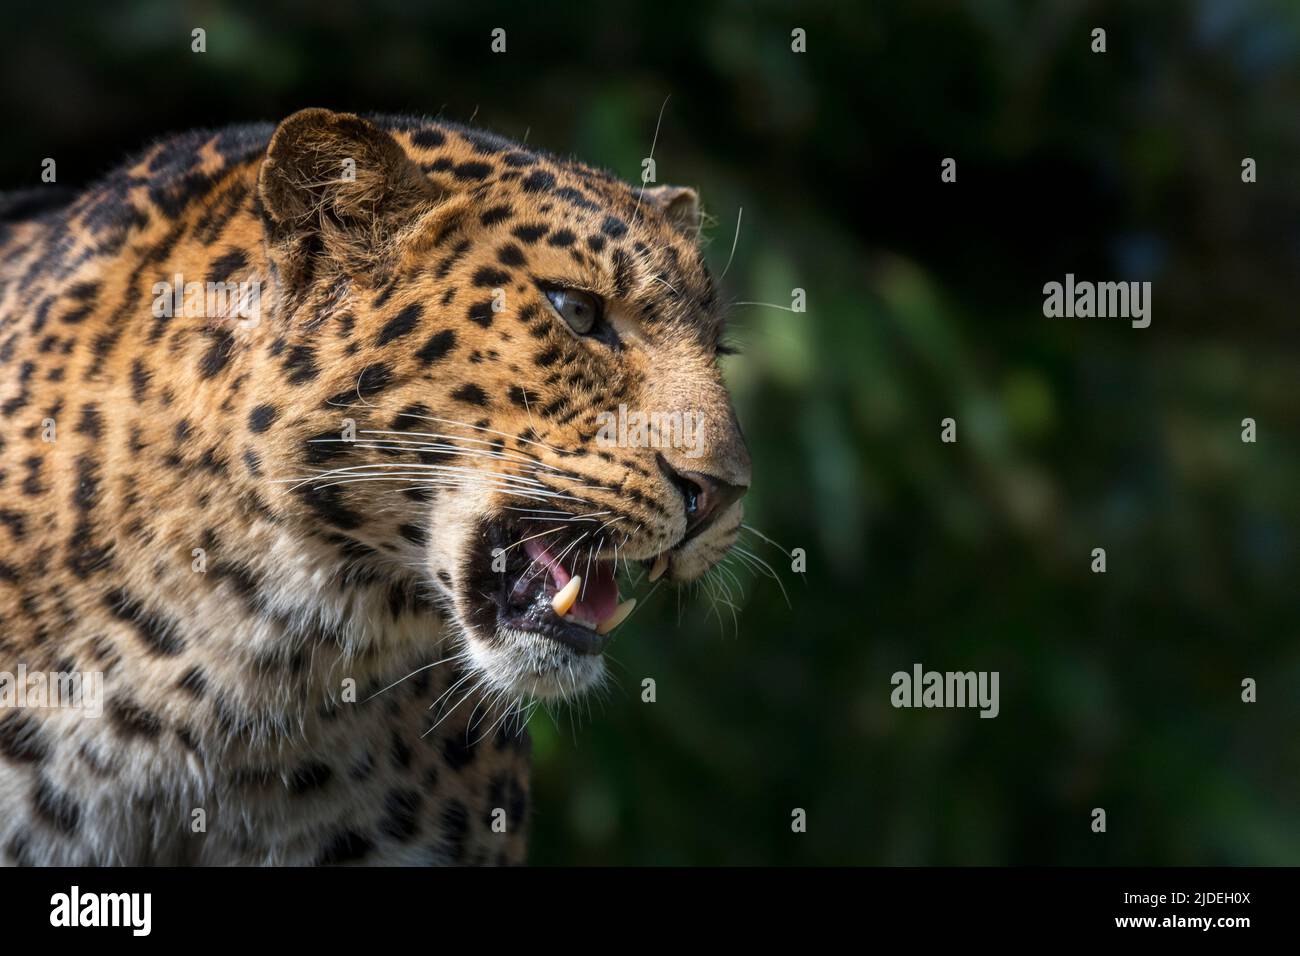 Amur leopardo (Panthera pardus orientalis) retrato de cerca que muestra caninos / colmillos, nativos del sureste de Rusia y el norte de China Foto de stock